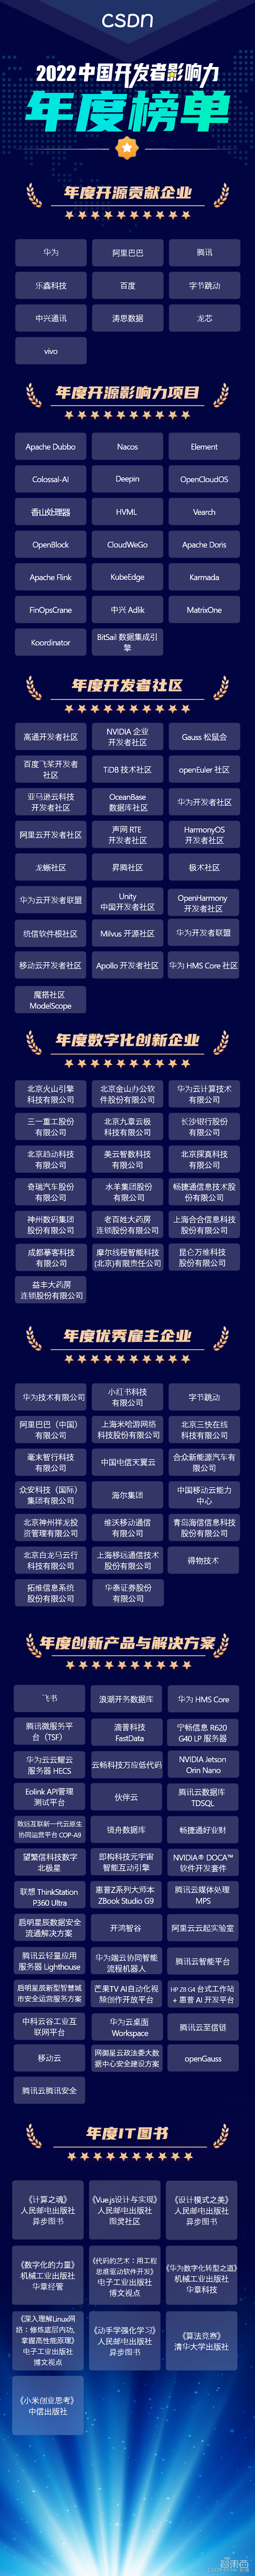 CSDN 2022 中国开发者影响力年度榜单正式揭晓